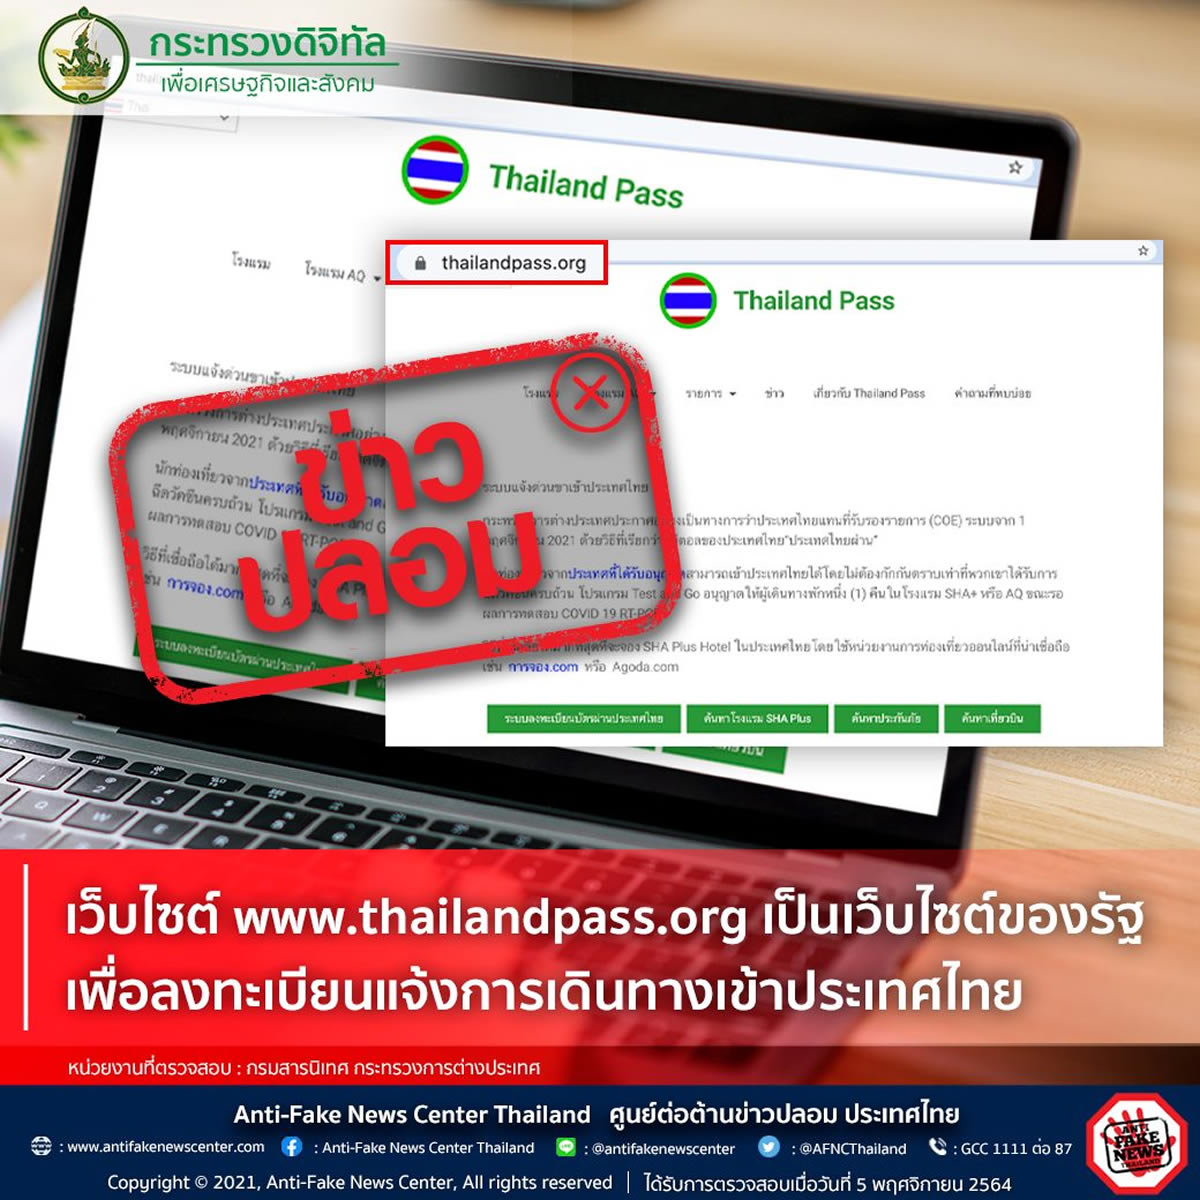 「タイランドパス」の偽サイトに注意、タイ政府が警告